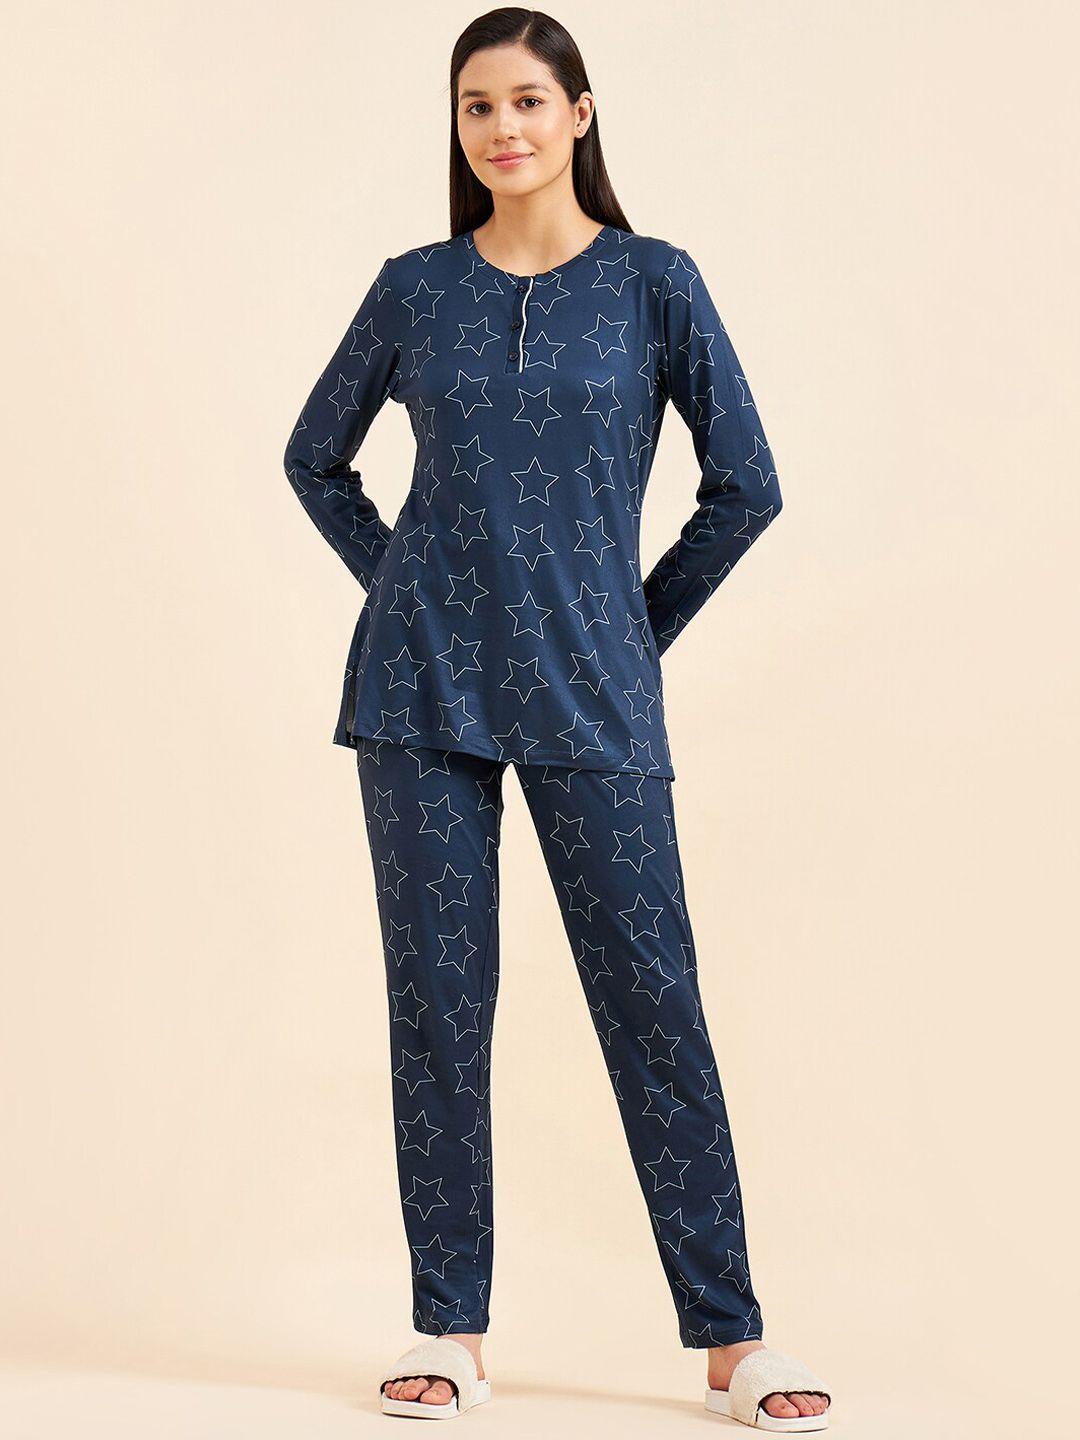 sweet-dreams-printed-top-and-pyjama-night-suit